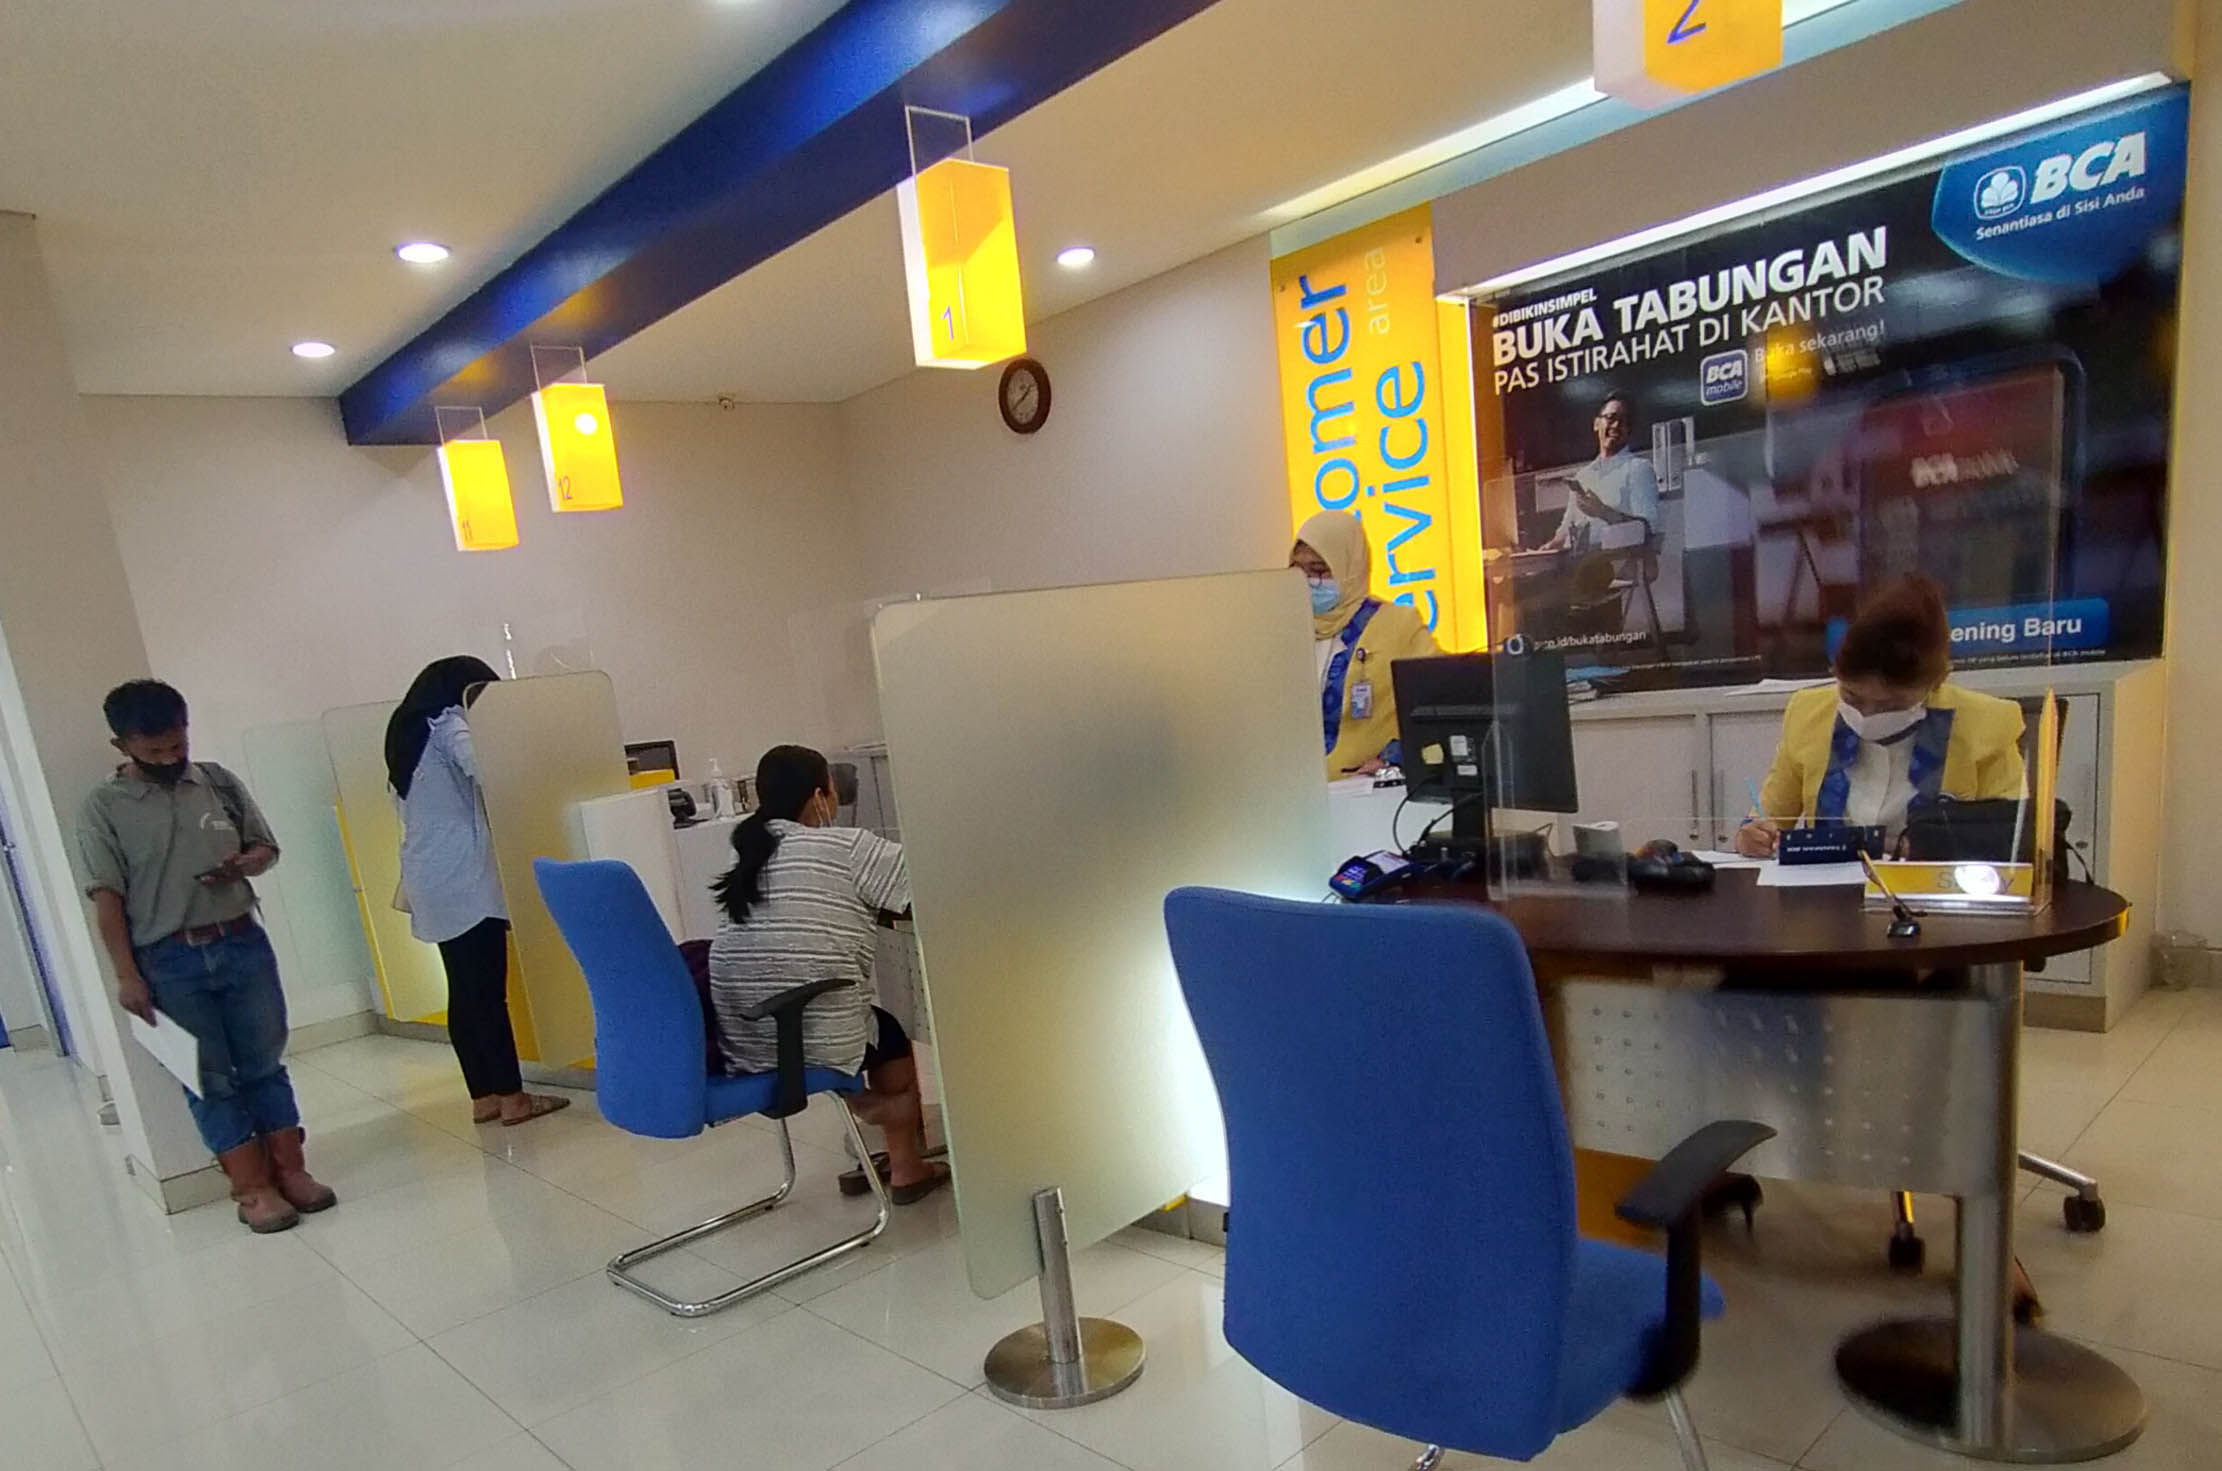 Suasana pelayanan perbankan di sebuah kantor cabang BCA. Foto : Panji Asmoro/TrenAsia